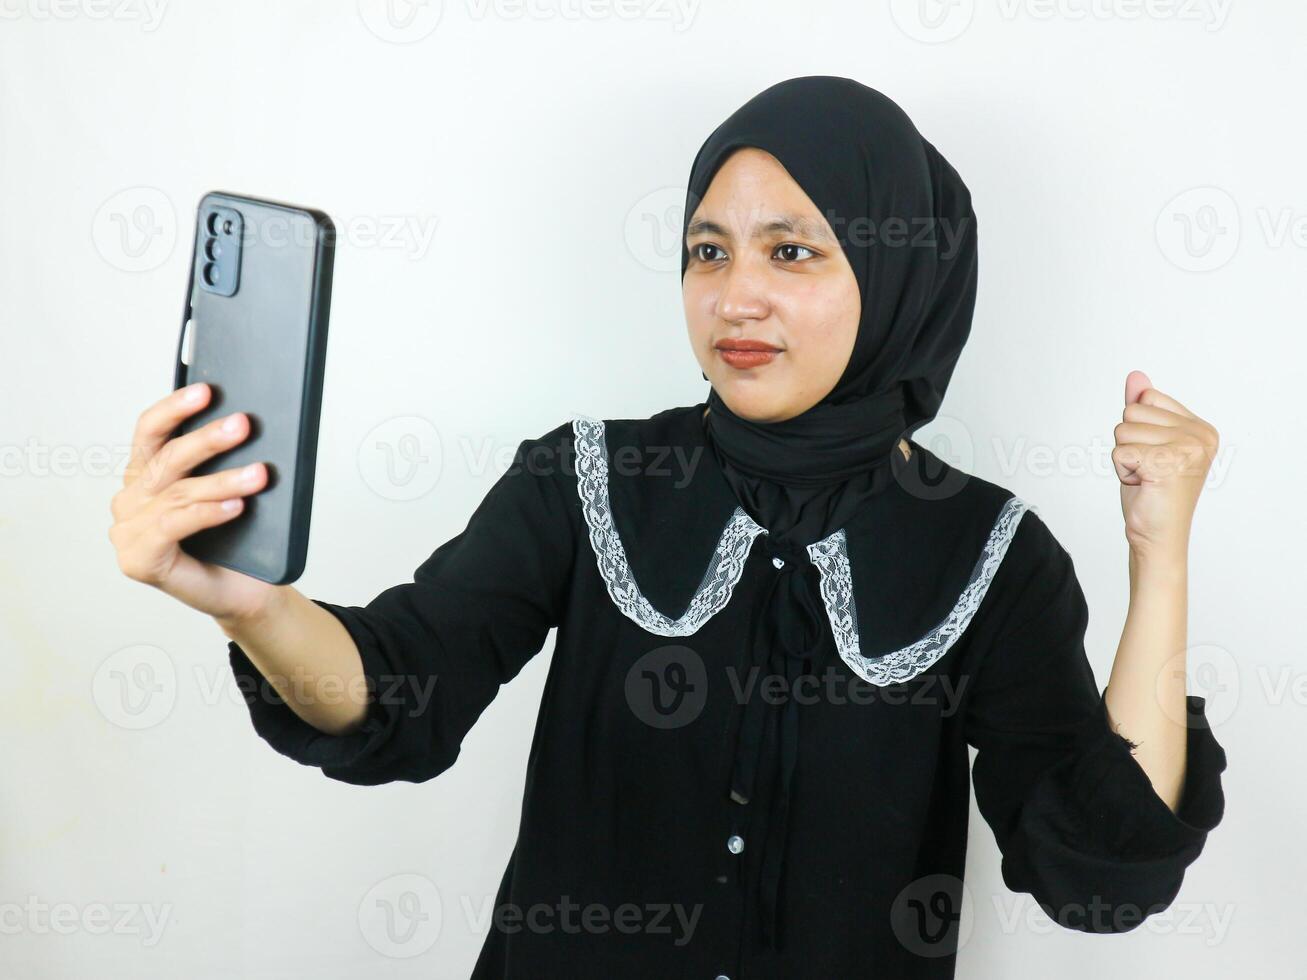 upphetsad skön asiatisk kvinna i hijab använder sig av en mobil telefon knäppning näve mottagen Bra Nyheter foto